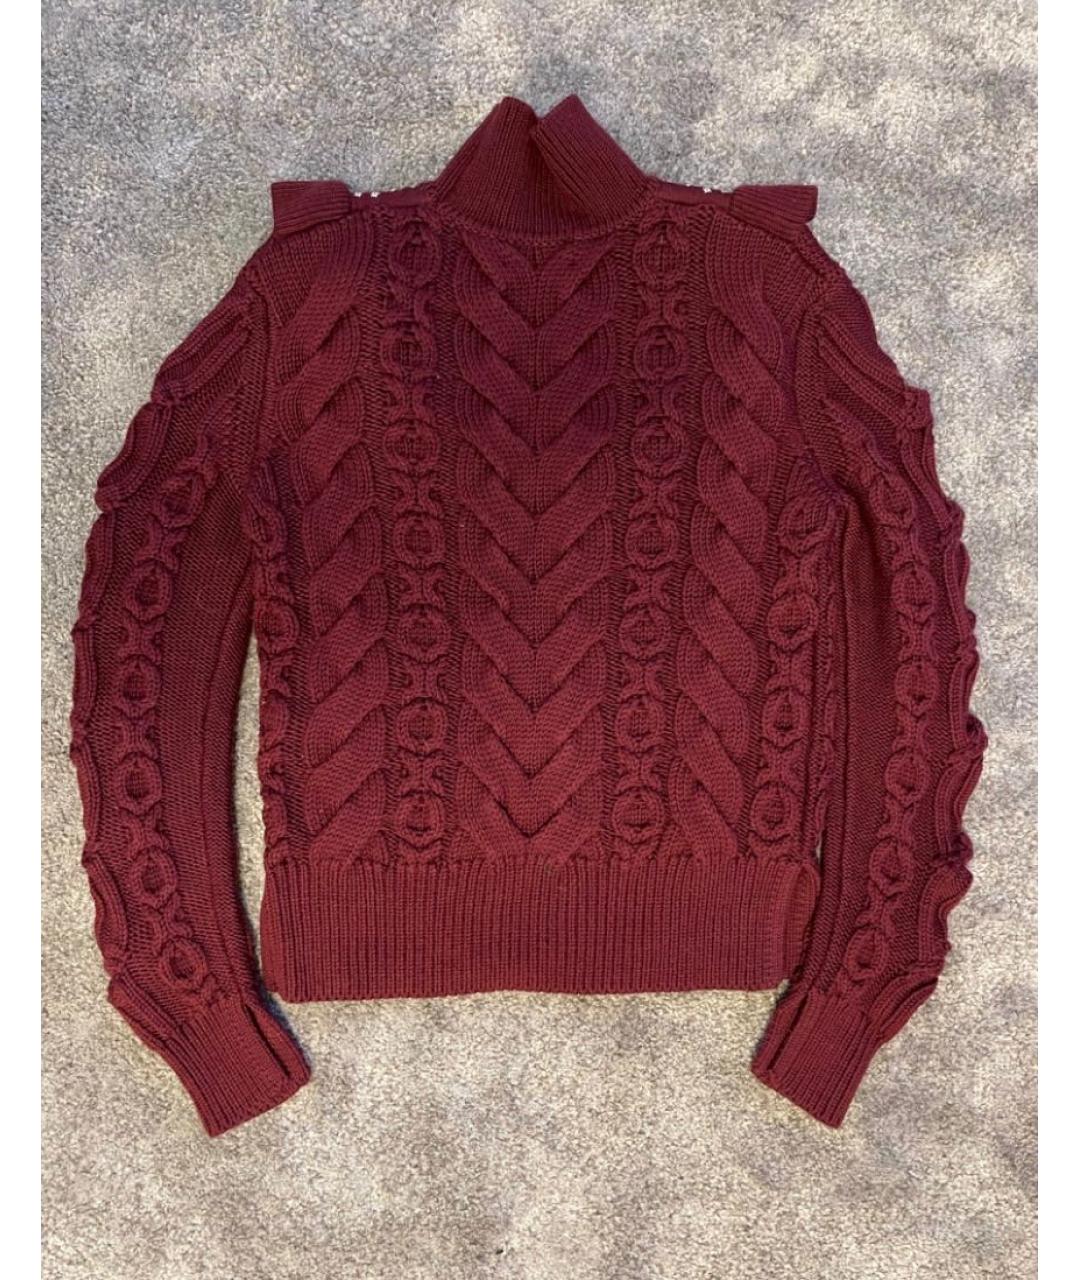 TAK.ORI Бордовый шерстяной джемпер / свитер, фото 2